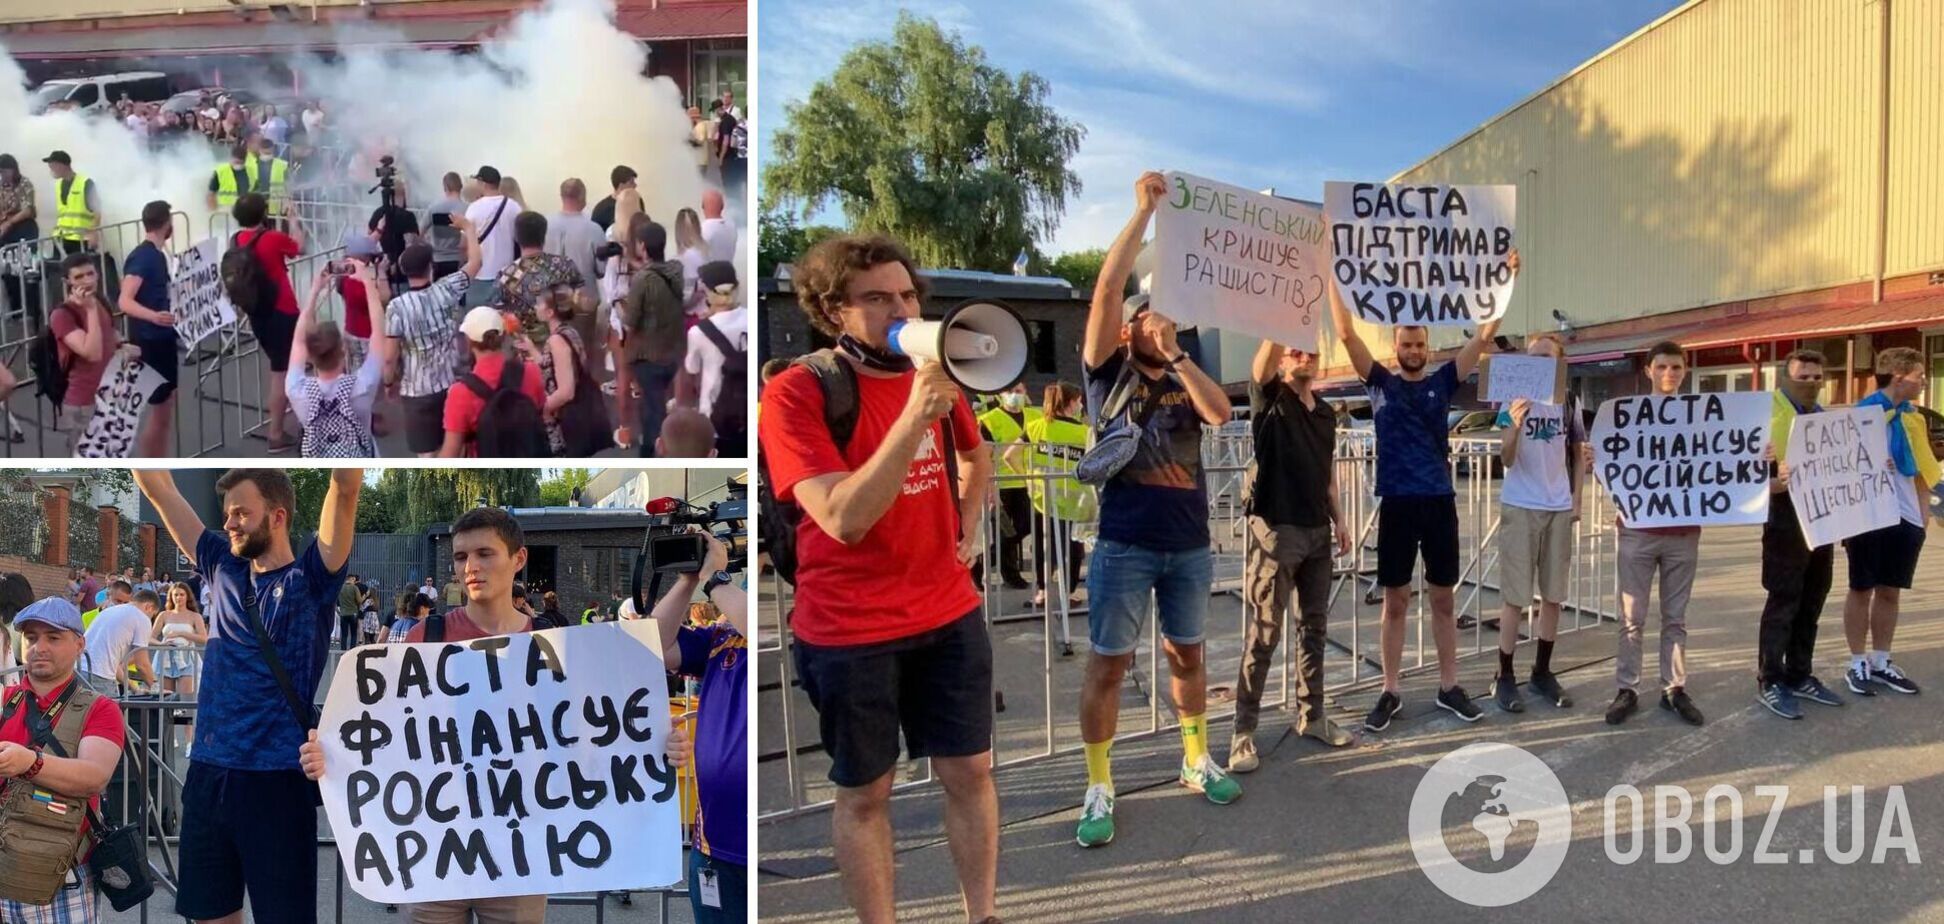 В Киеве прошел протест перед концертом Басты из-за гастролей в Крыму: подробности, фото и видео